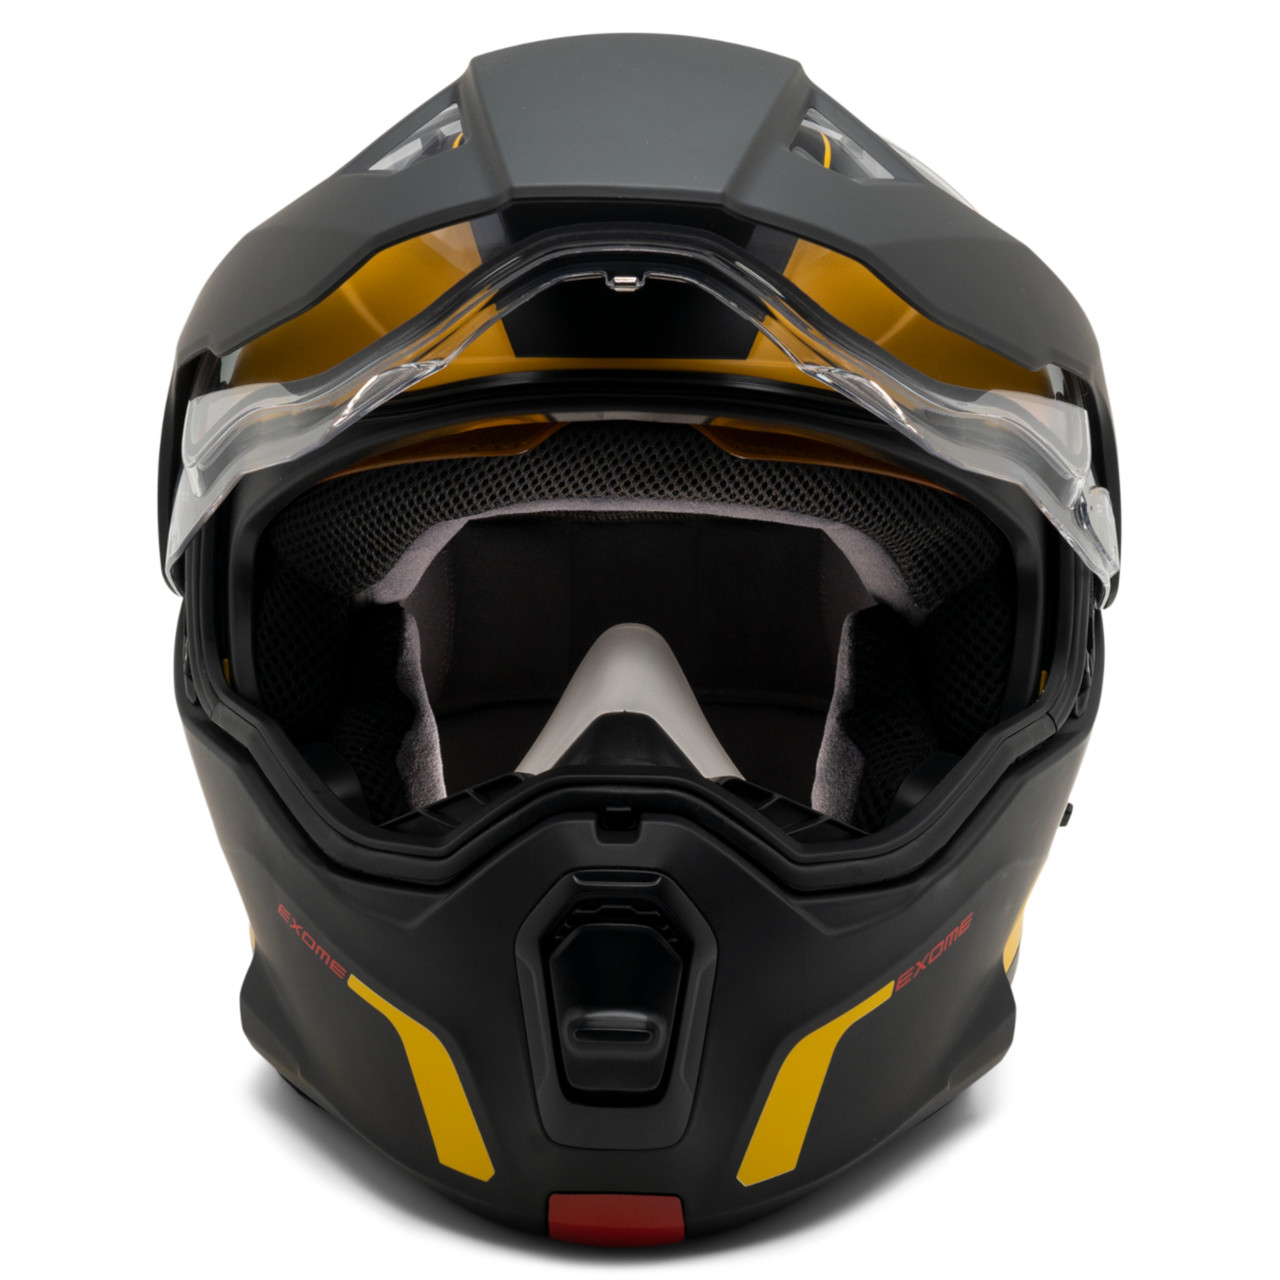 Ski-Doo New OEM Exome Sport Helmet (DOT), Unisex 3X-Large, 9290361610